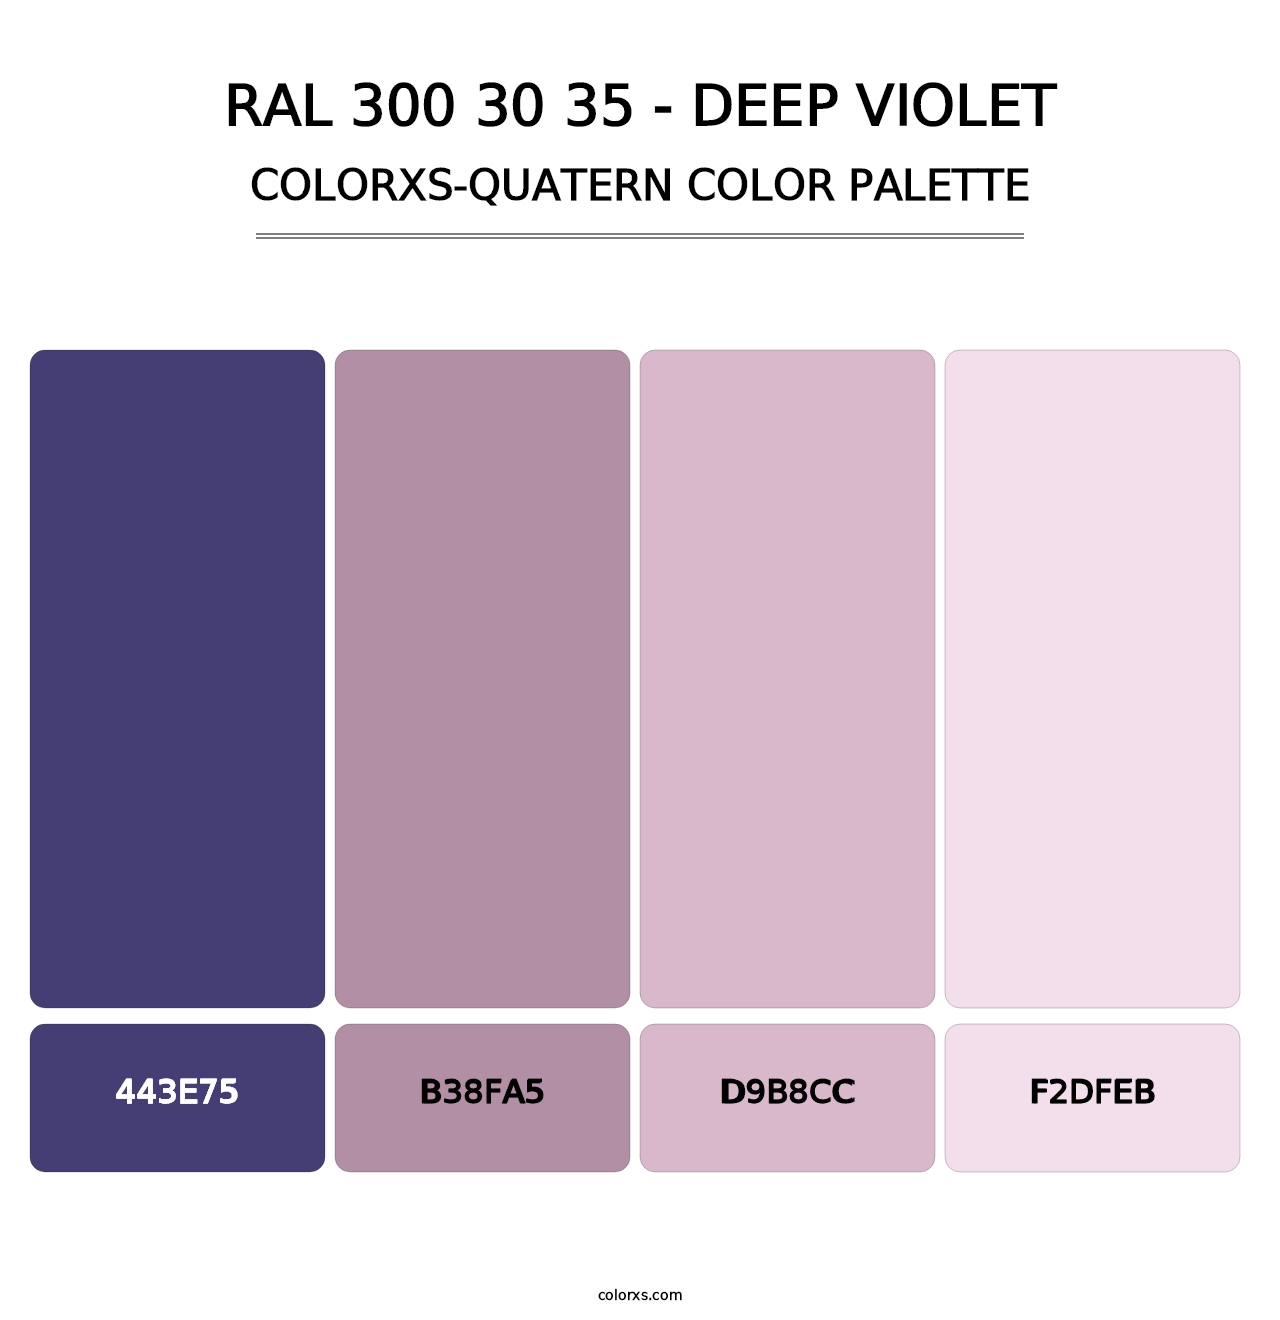 RAL 300 30 35 - Deep Violet - Colorxs Quatern Palette